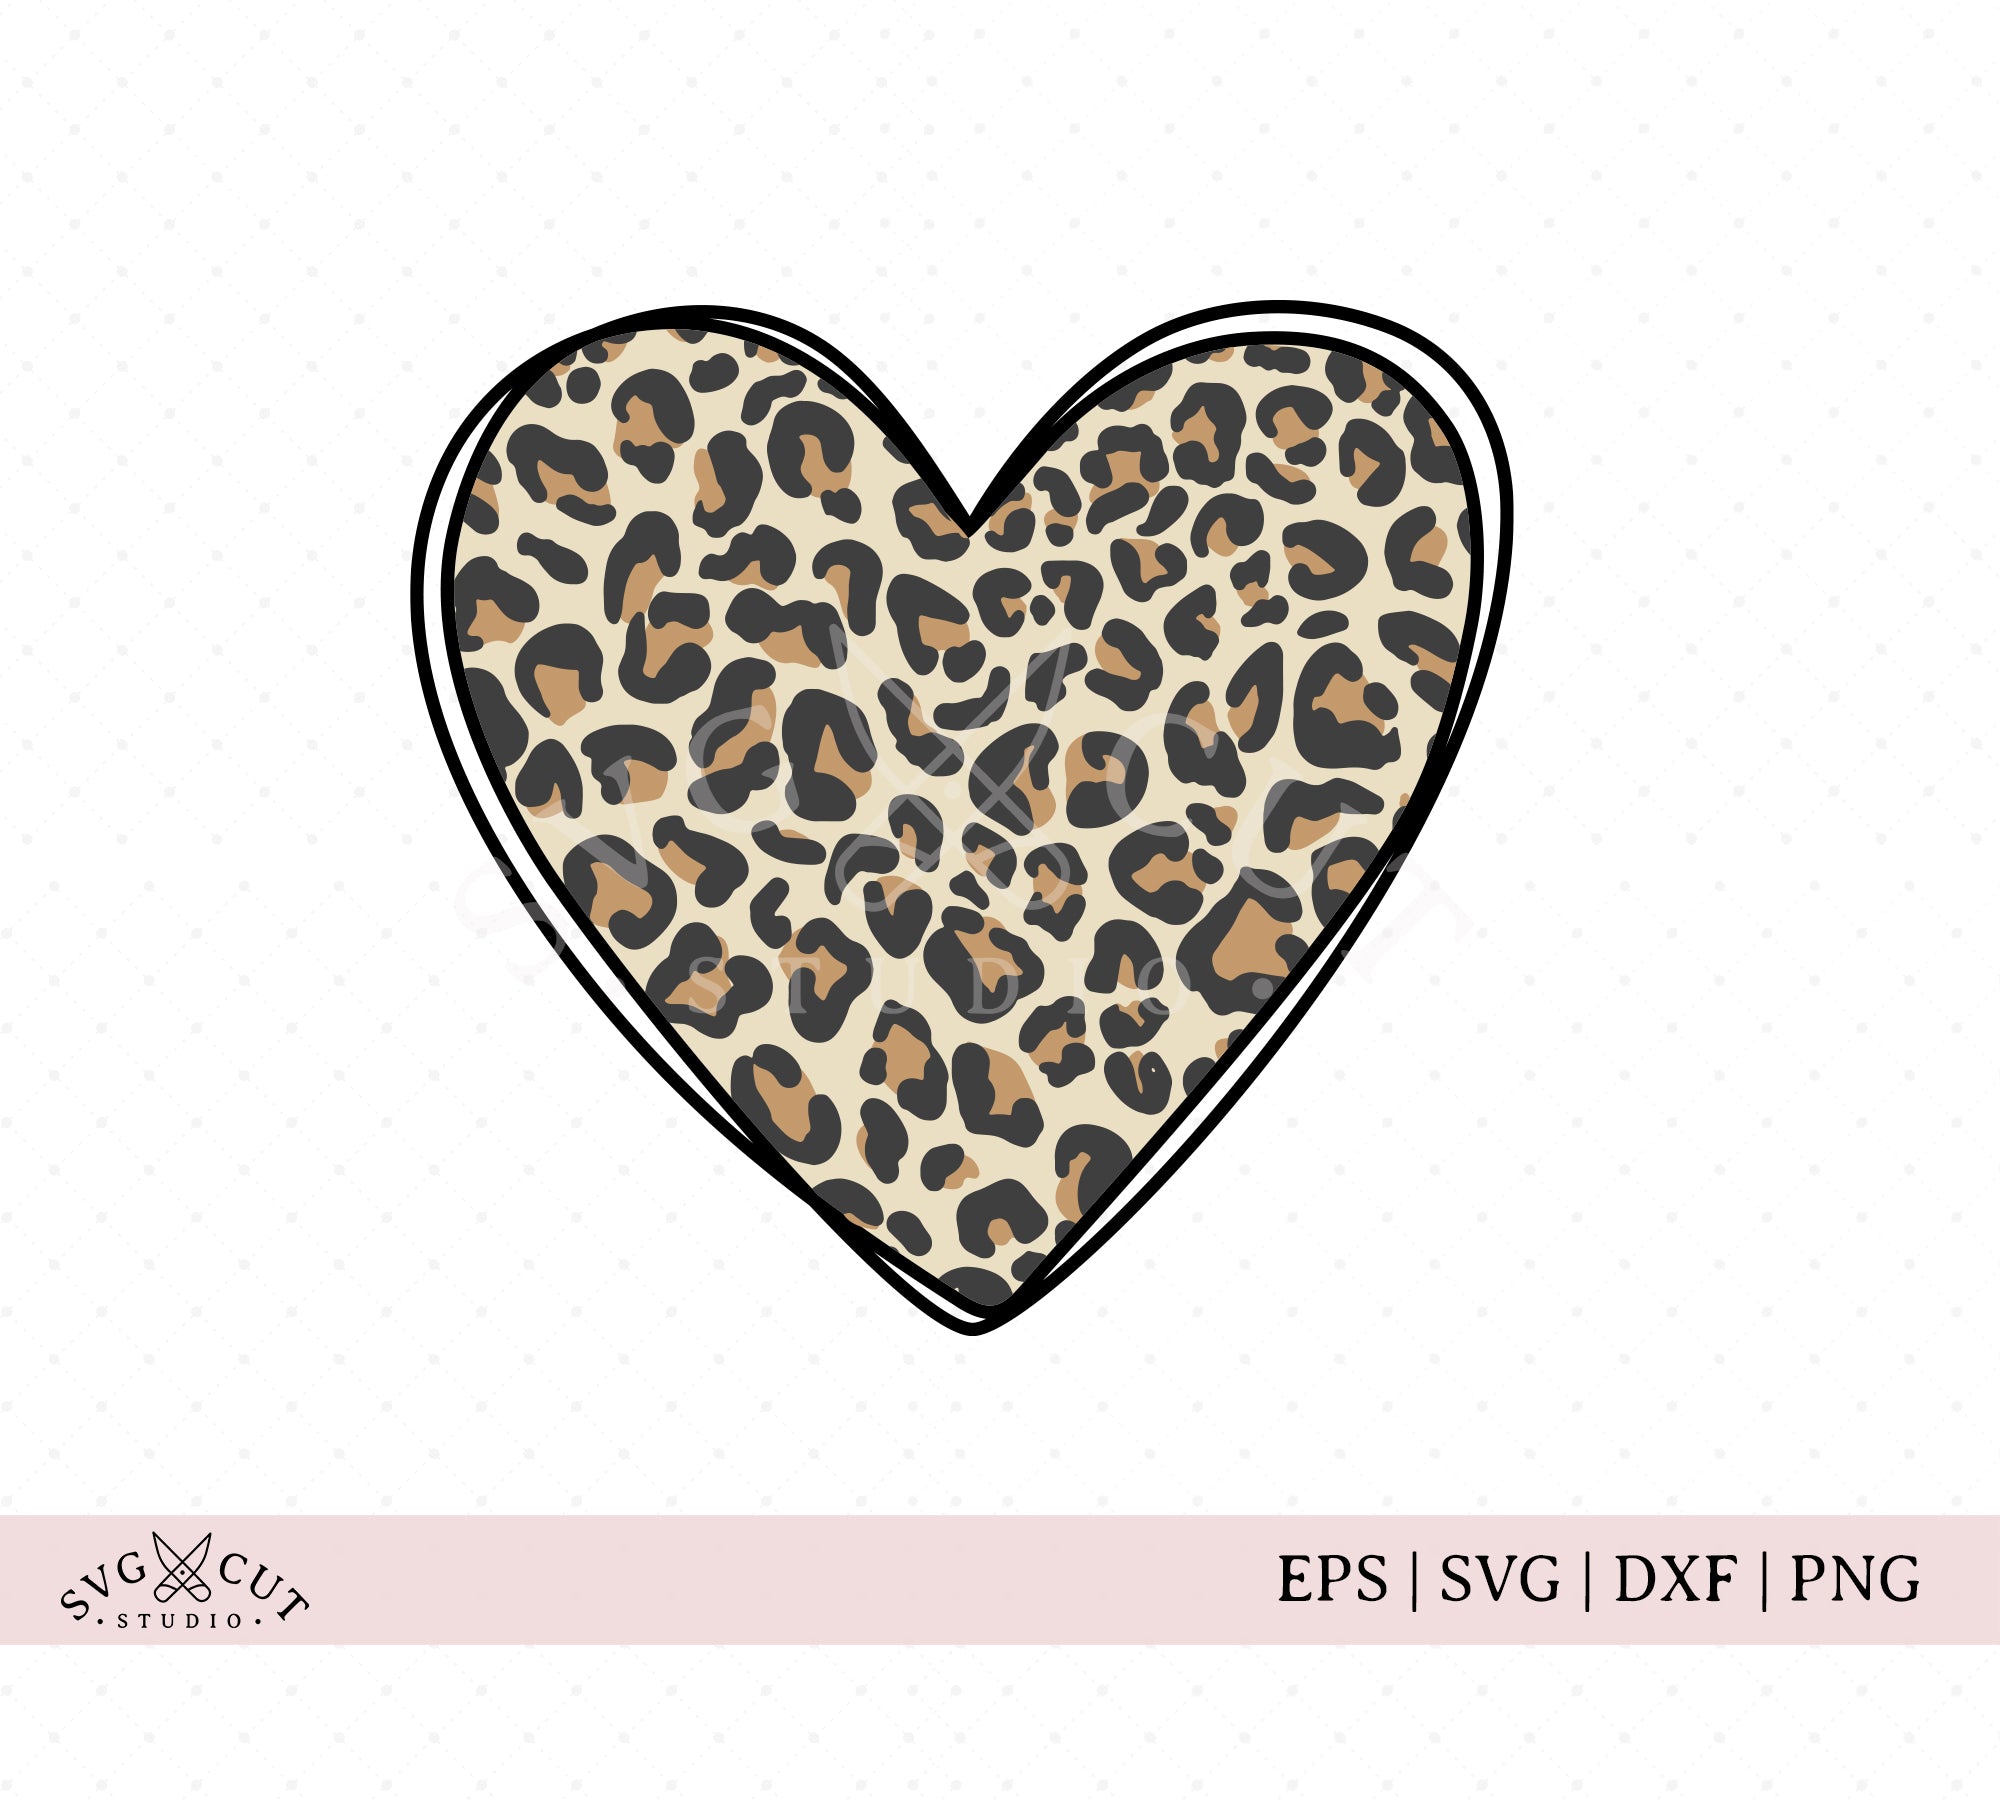 Leopard Heart Svg, Leopard Hand Drawn Heart Svg, Cheetah Spots Svg